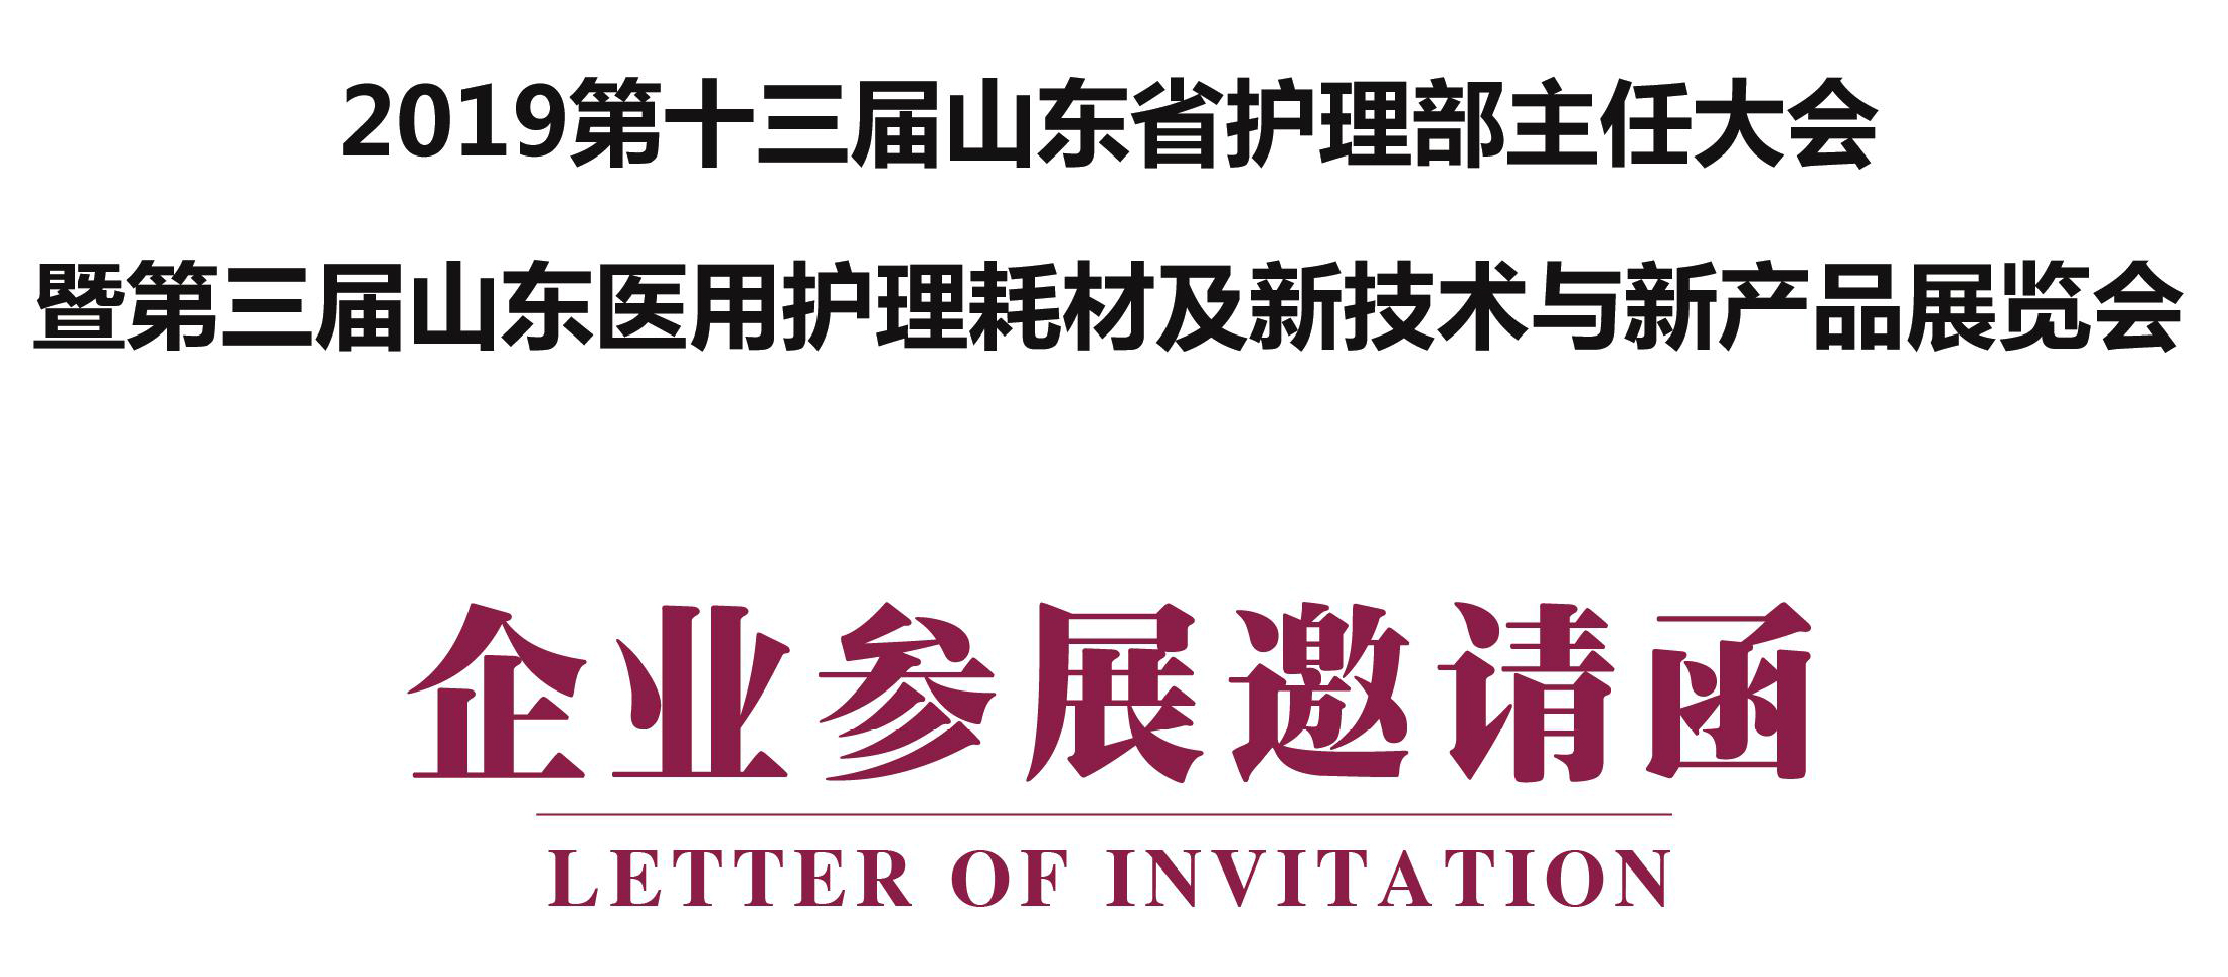 天坦软件应邀参加2019第十三届山东省护理部主任大会